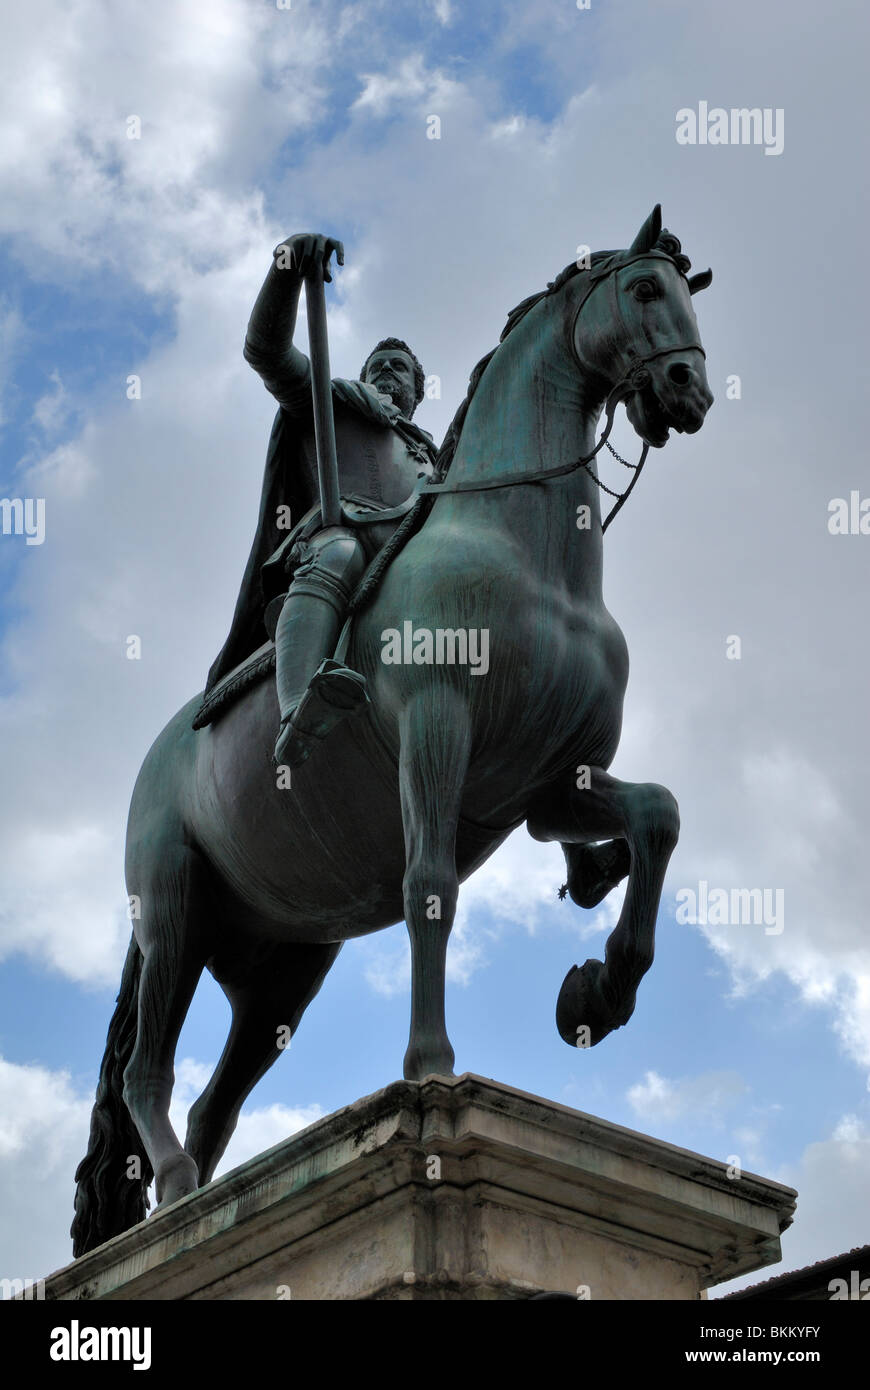 The equestrian statue of the Grand Duke of Tuscany Ferdinando I de Medici by Giambologna, also known as Giovanni da Bologna, in Stock Photo